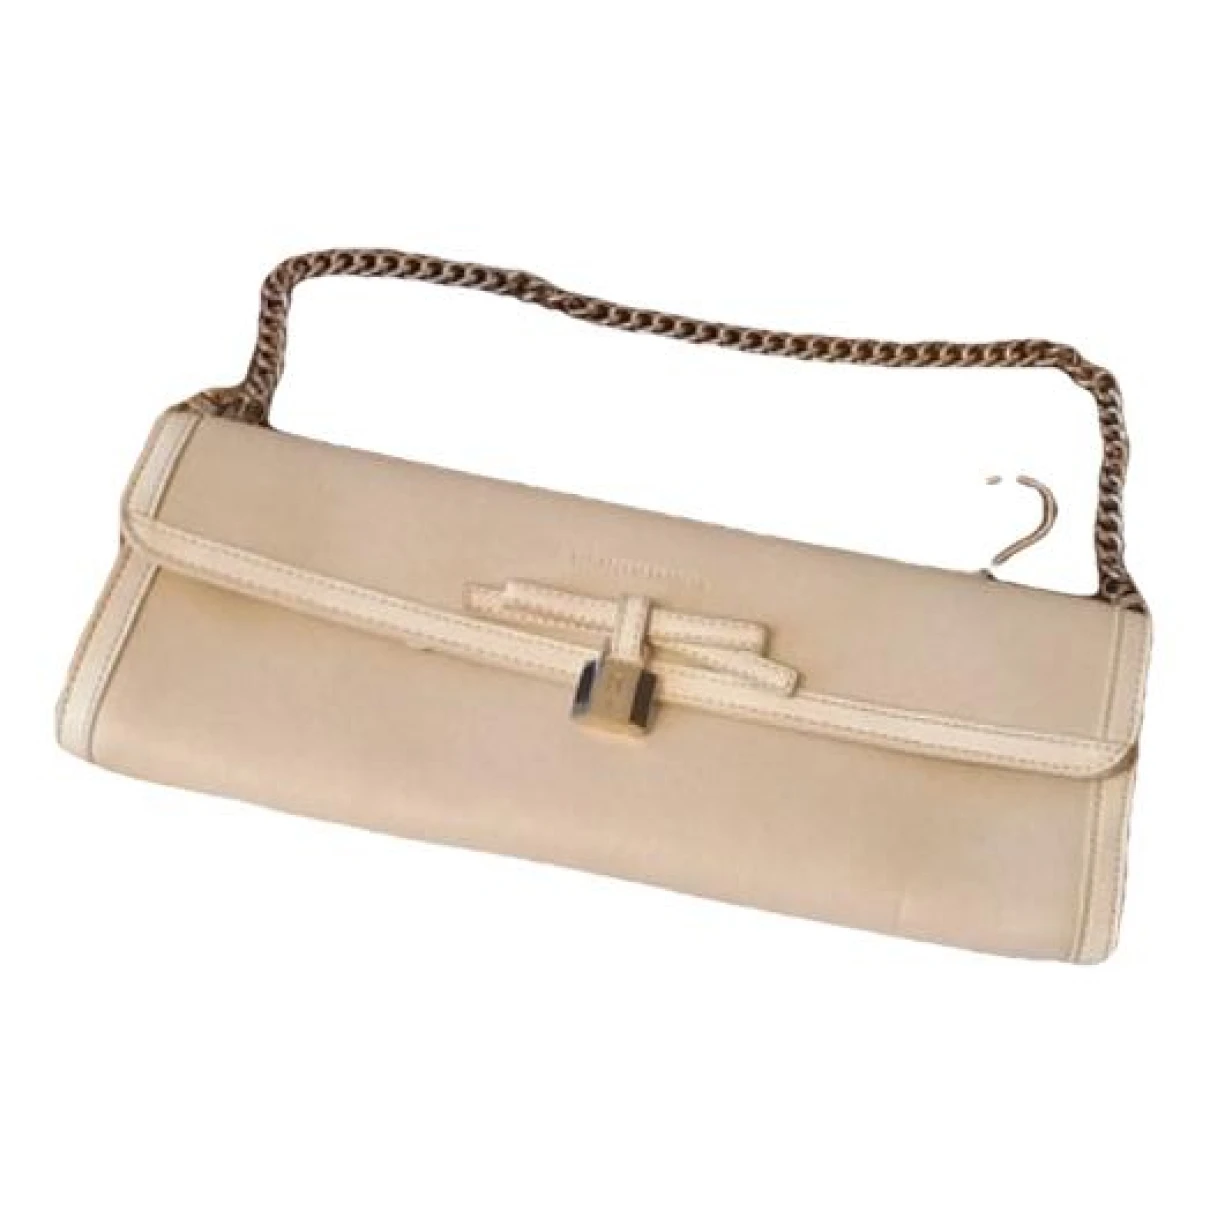 Pre-owned Elisabetta Franchi Leather Handbag In Beige